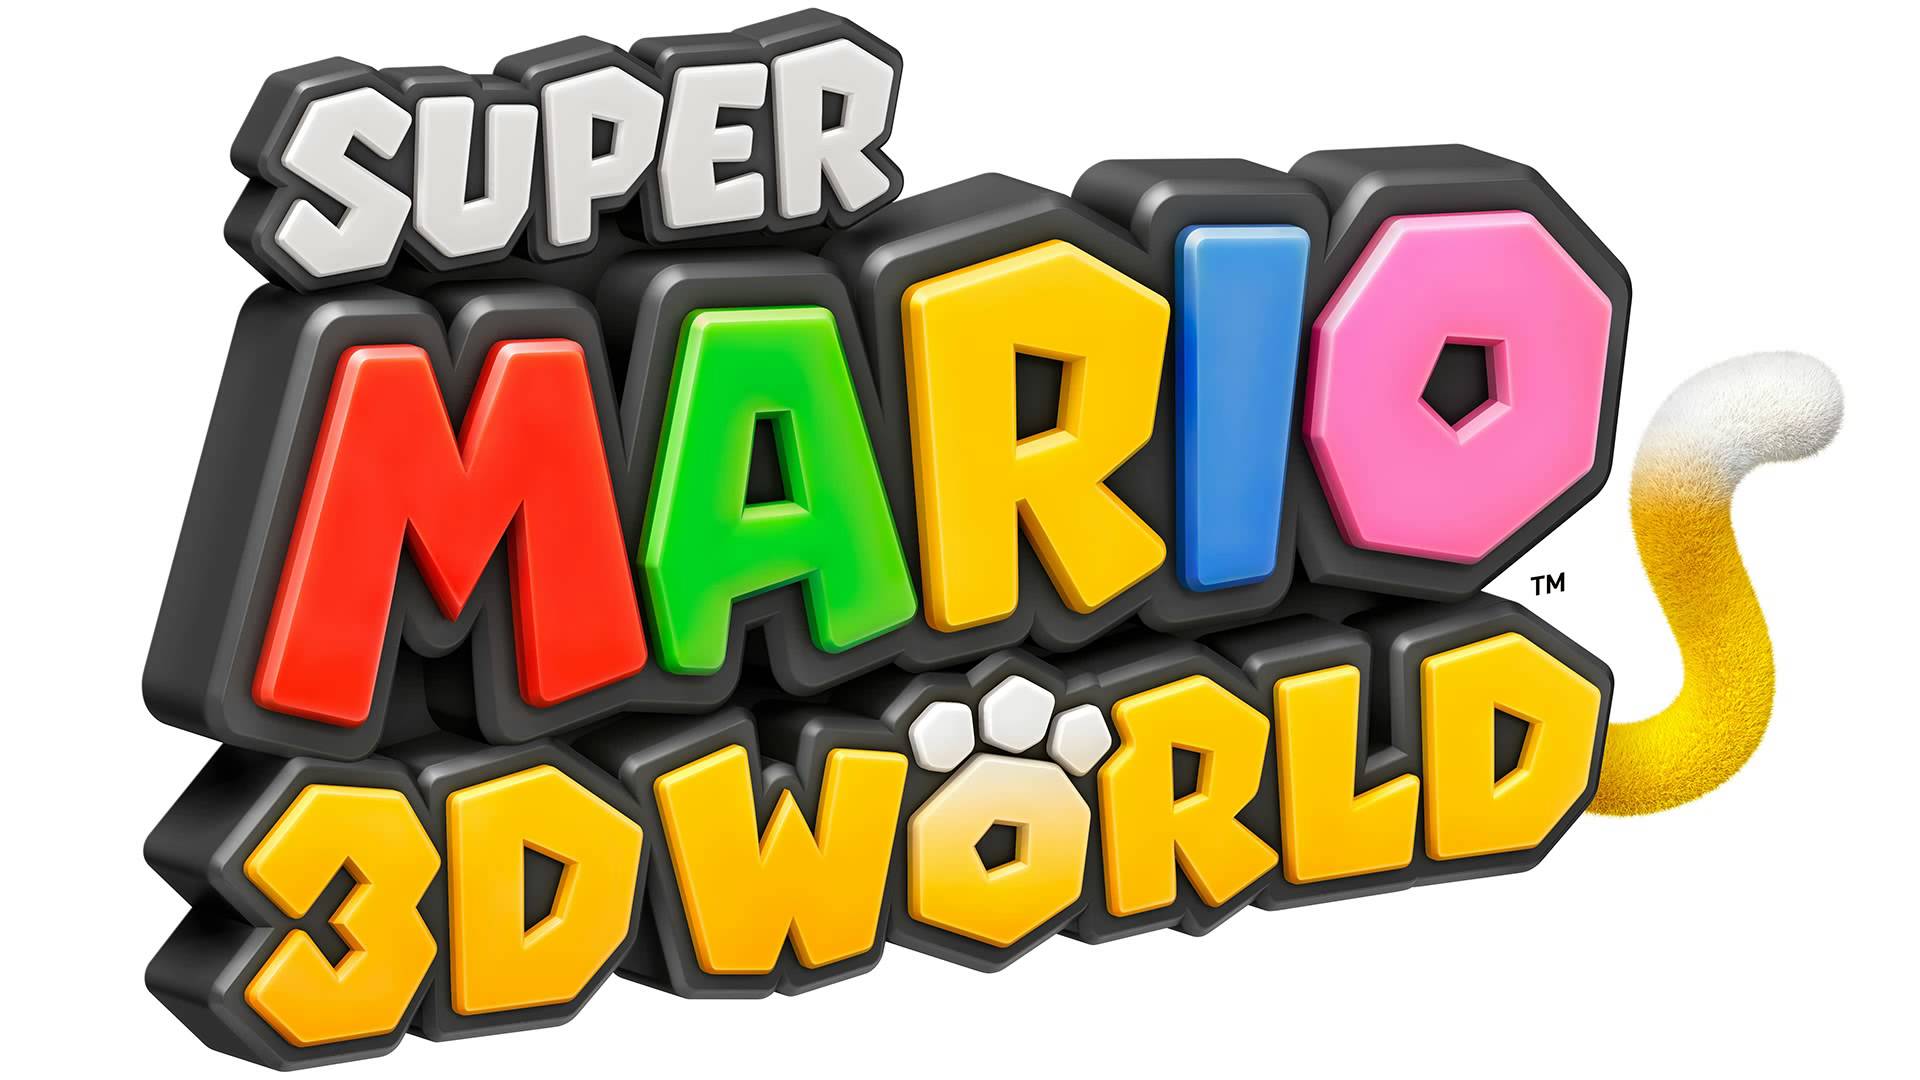 super mario 3d world cemu download